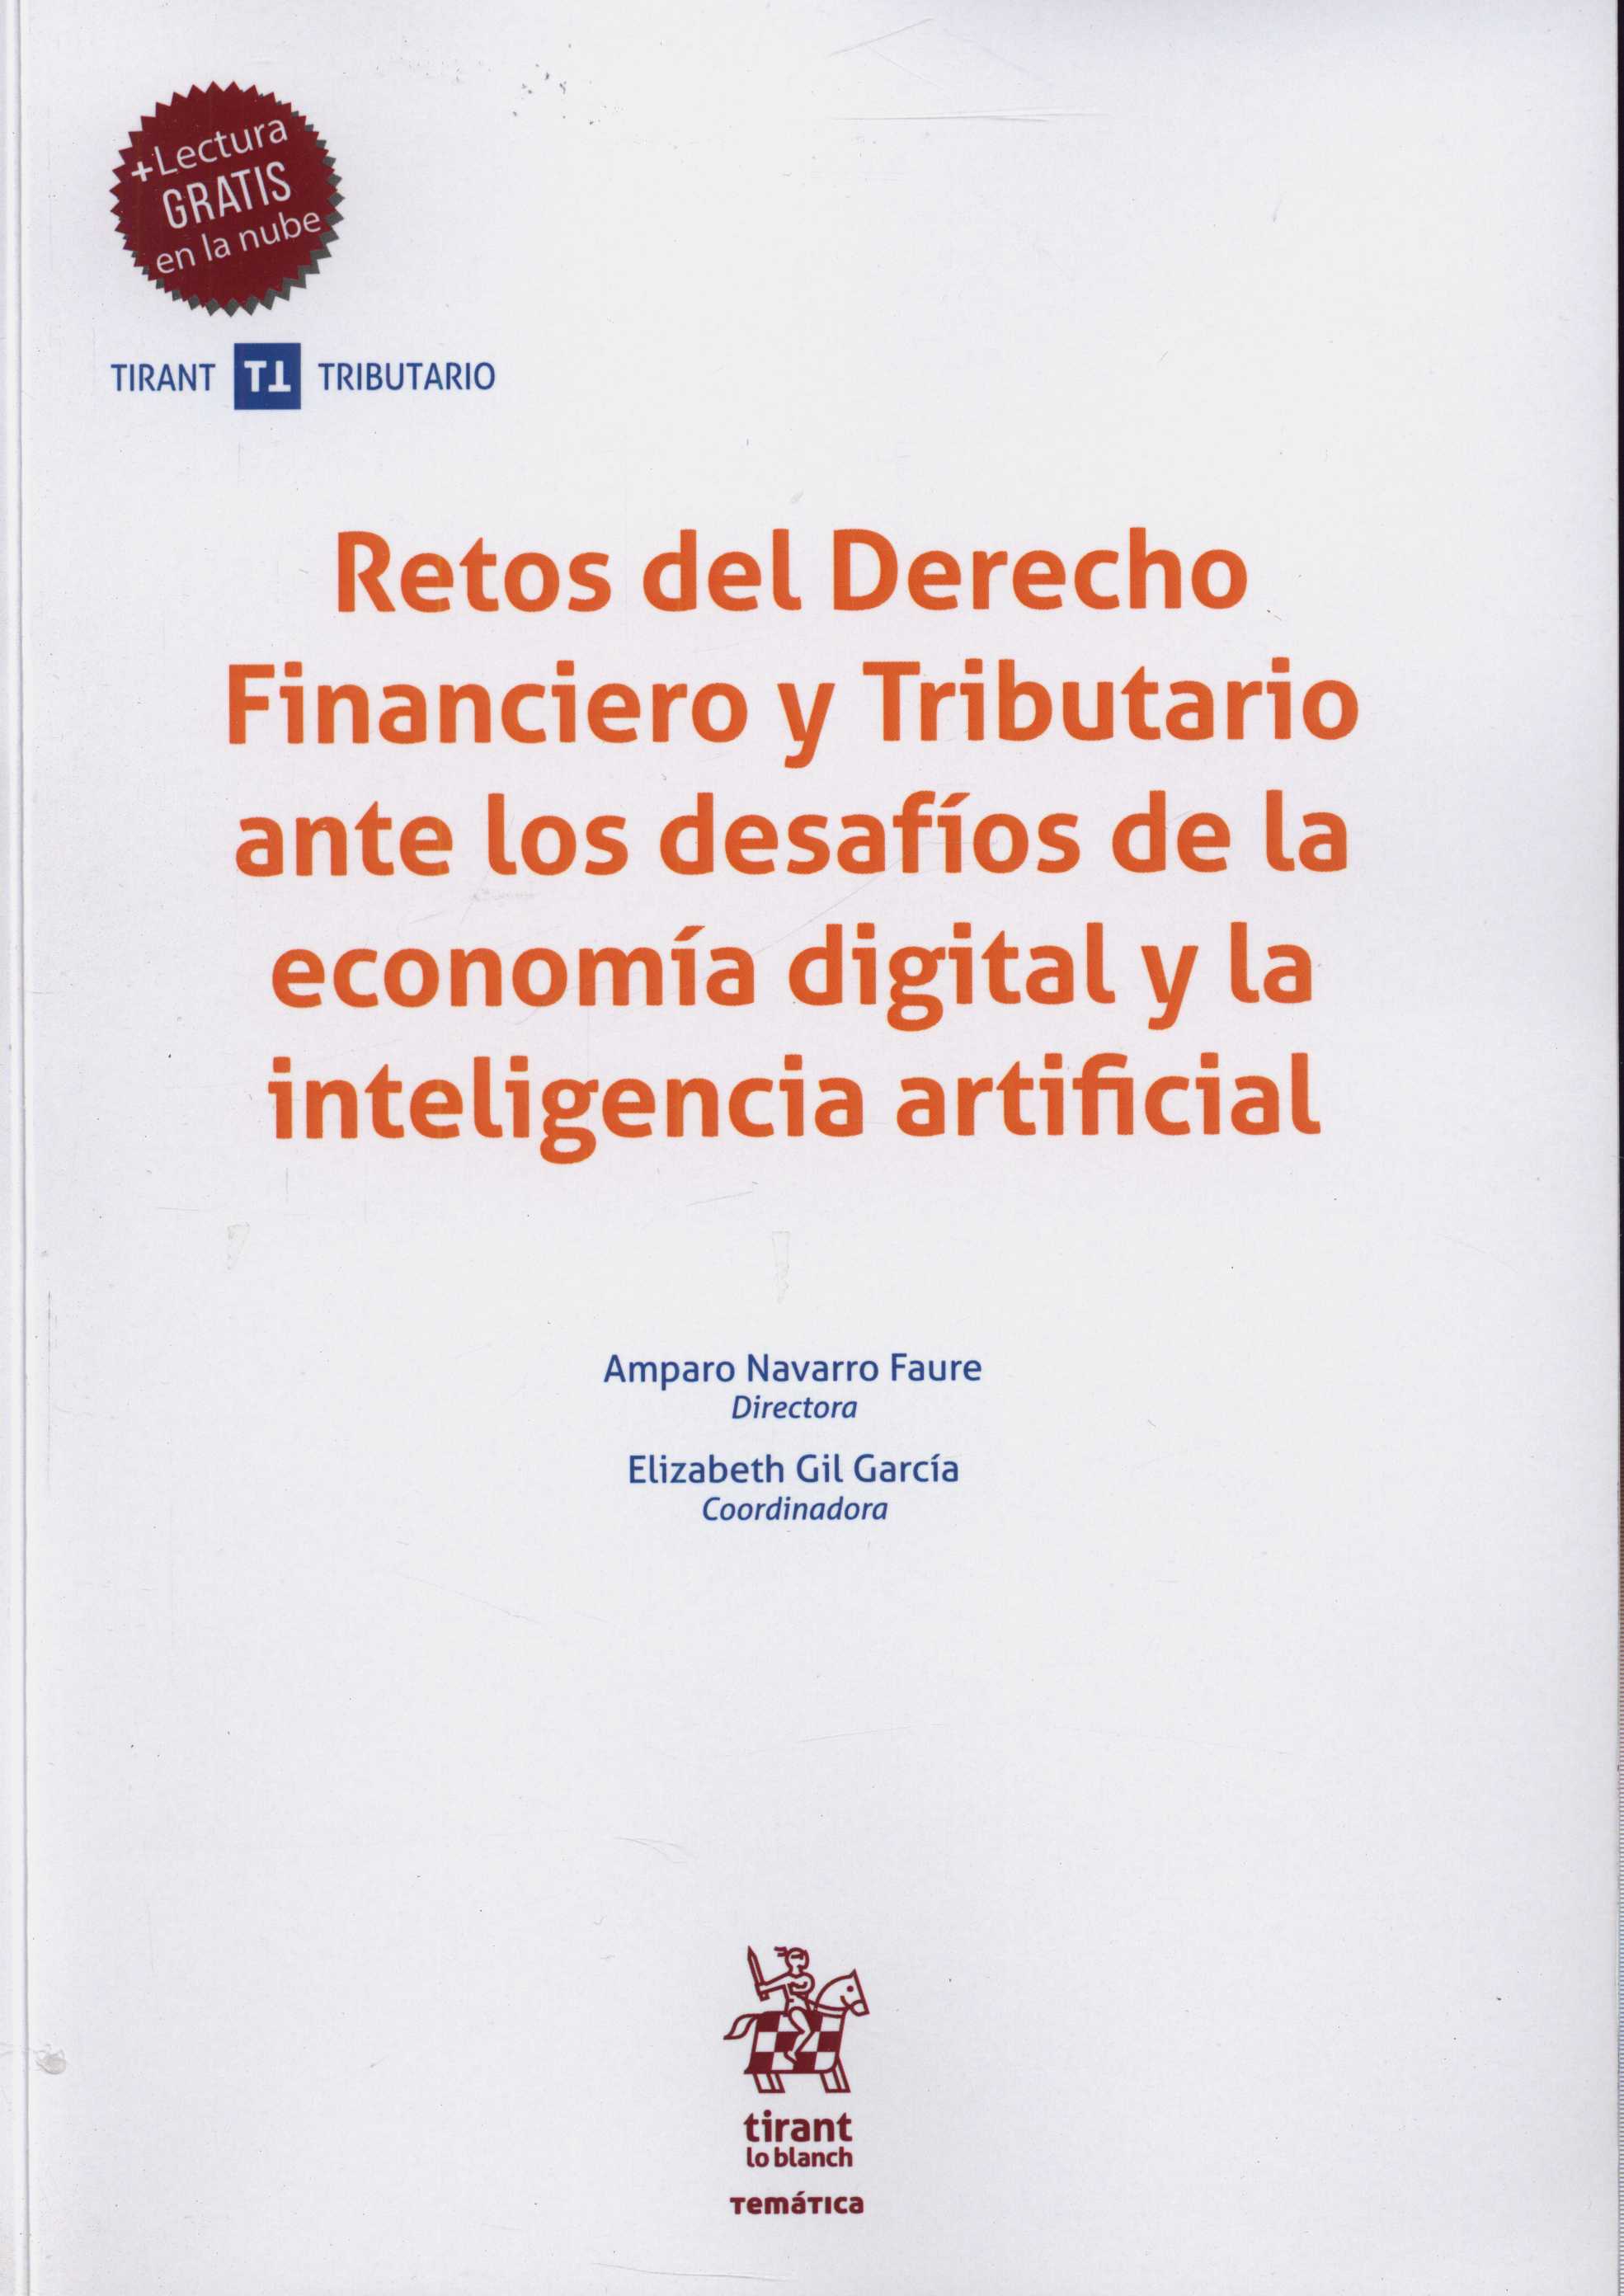 Imagen de portada del libro Retos del derecho financiero y tributario ante los desafíos de la economía digital y la inteligencia artificial